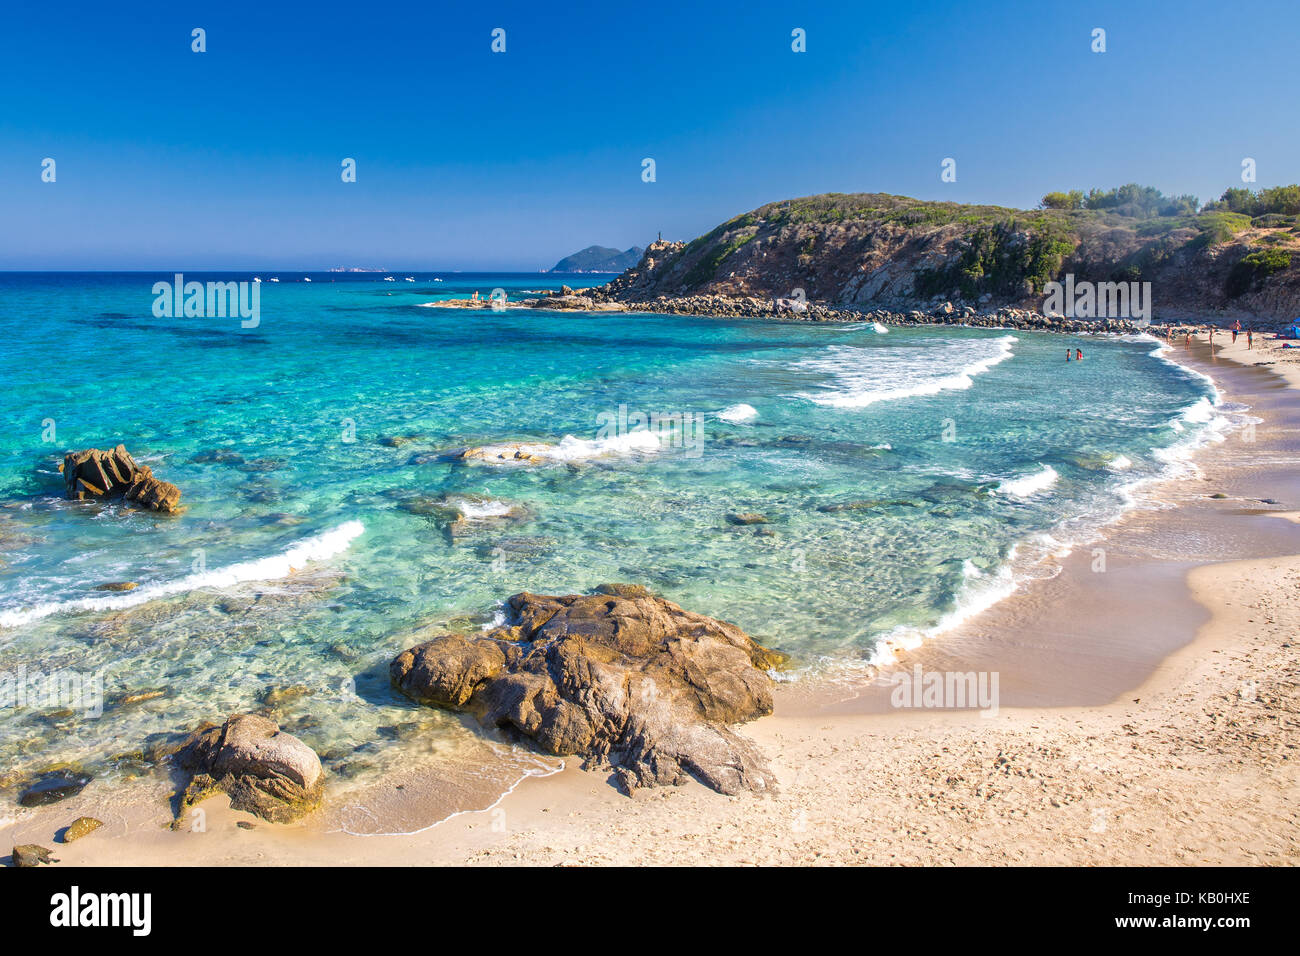 Spaggia di santa giusta beach con azure acqua chiara, costa Rei, Sardegna, Italia. La Sardegna è la seconda isola più grande del Mediterraneo. Foto Stock